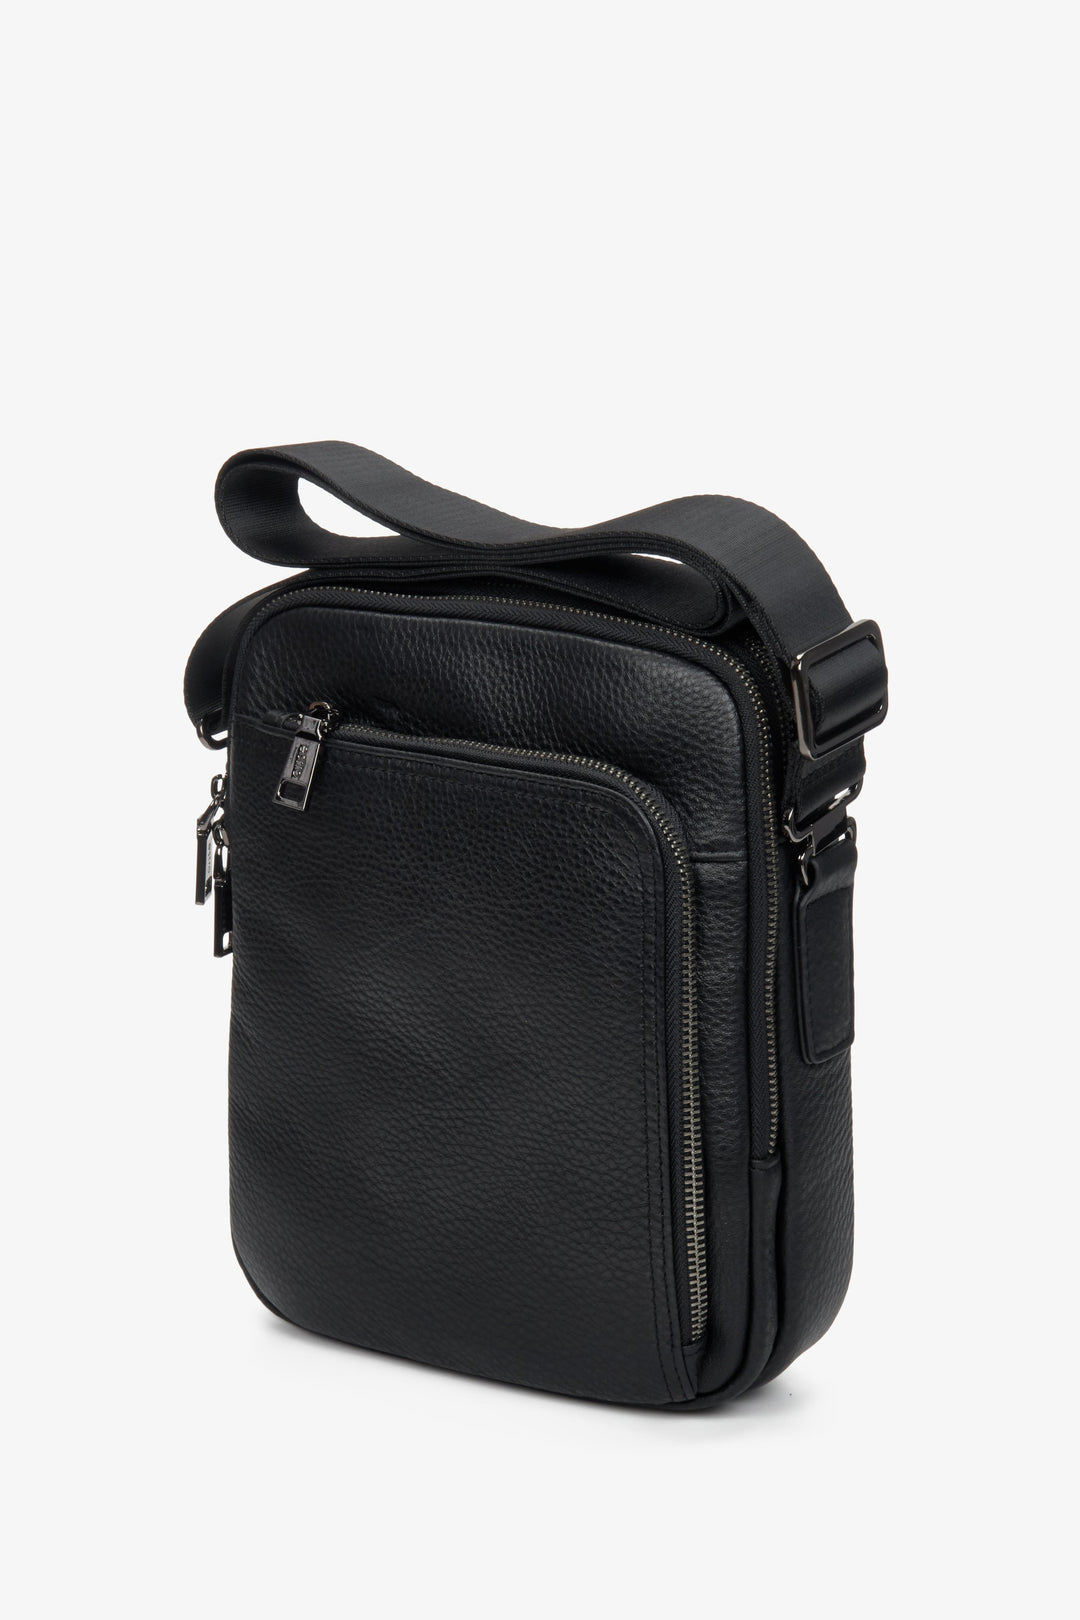 Men's black leather pouch by Estro.